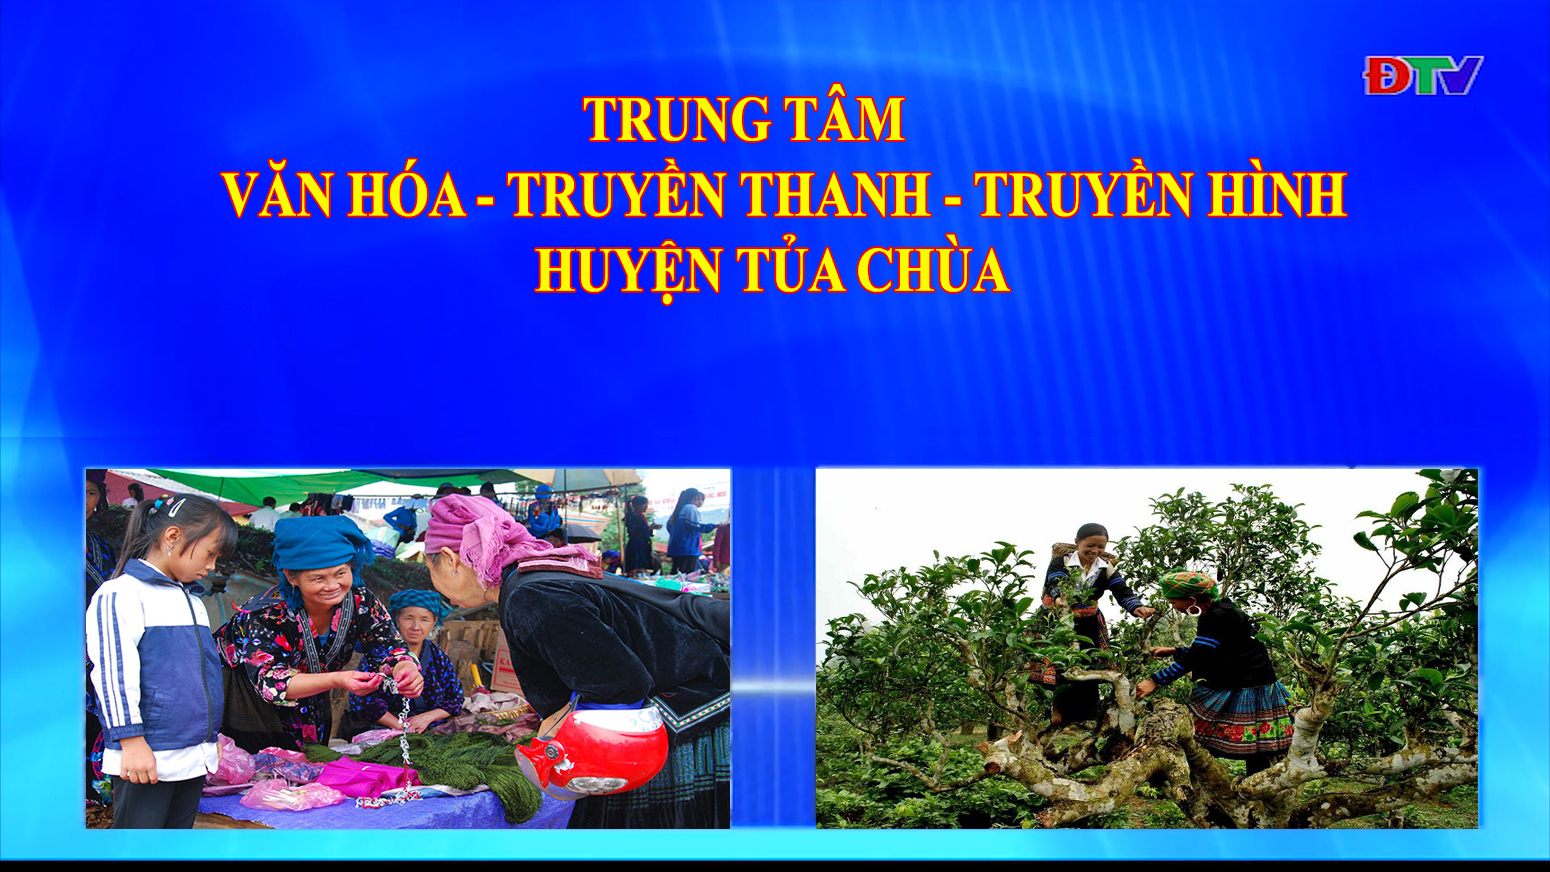 Trung tâm Văn hóa Truyền thanh Truyền hình huyện Tủa Chùa (Ngày 10-7-2020)